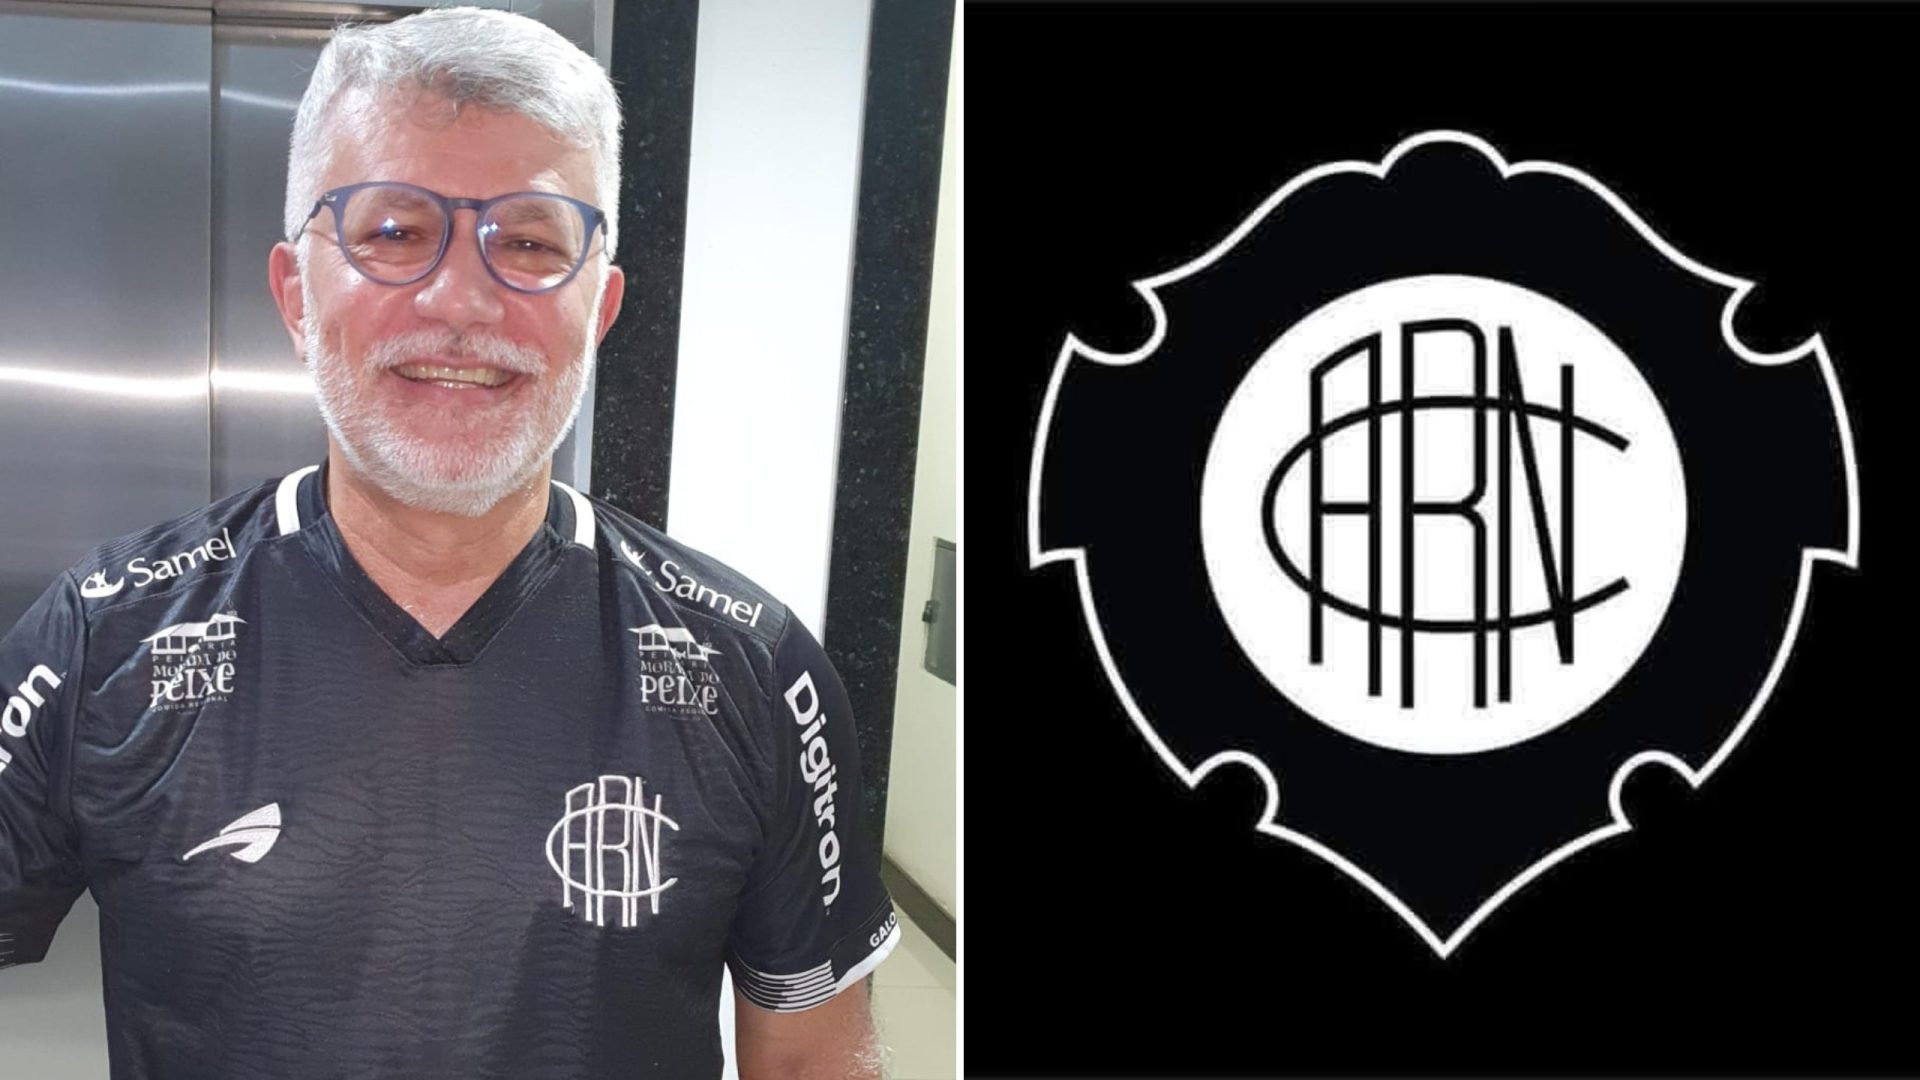 Álvaro Meninéa assume a presidência do Atlético Rio Negro Clube - Foto: Reprodução/Facebook Atlético Rio Negro Clube